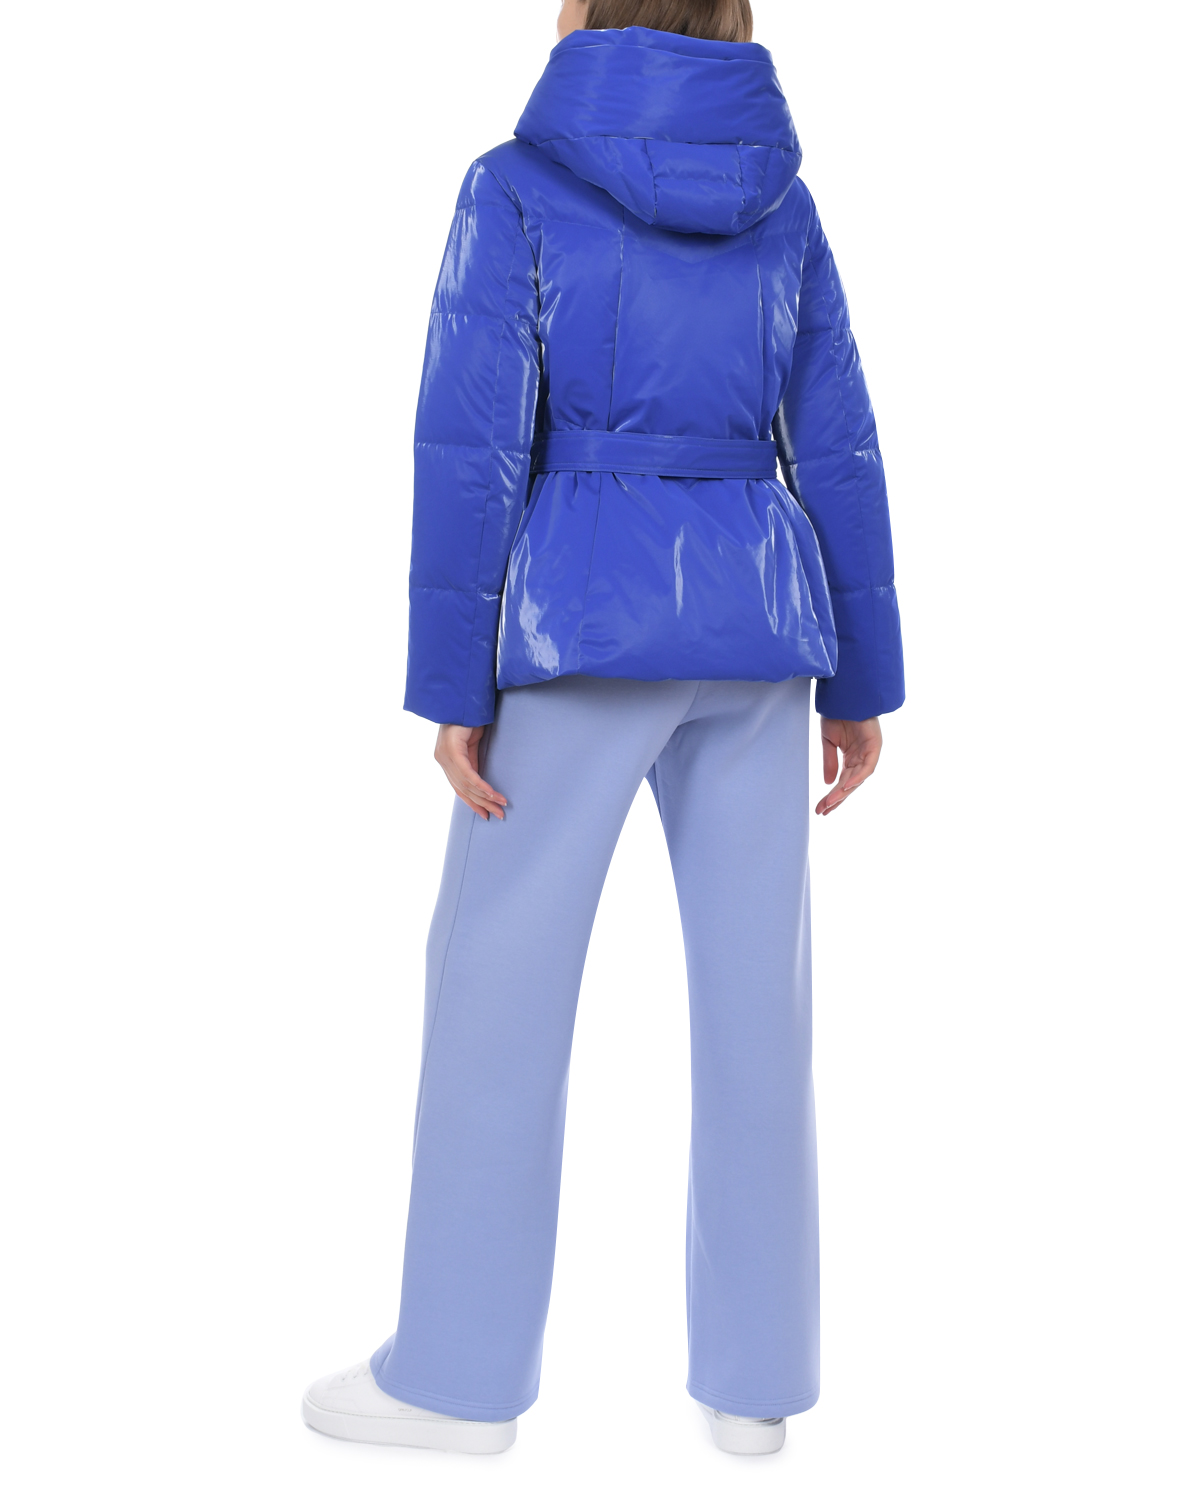 Синяя стеганая куртка с поясом Freedomday, размер 40, цвет синий - фото 3